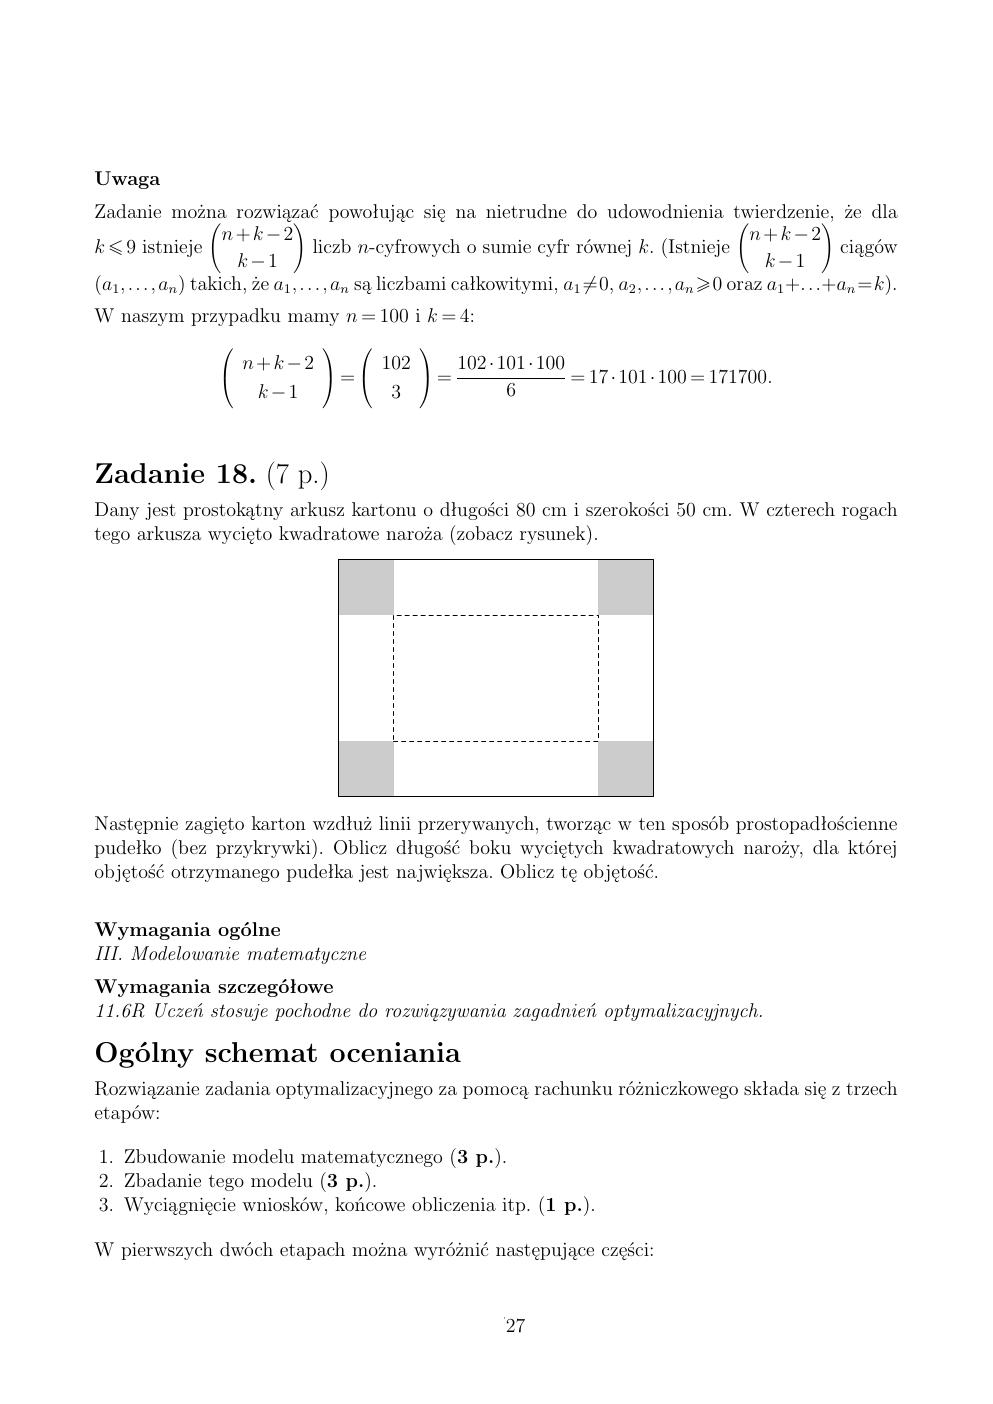 zasady oceniania - odpowiedzi - matematyka rozszerzony - matura 2015 przykładowa-27